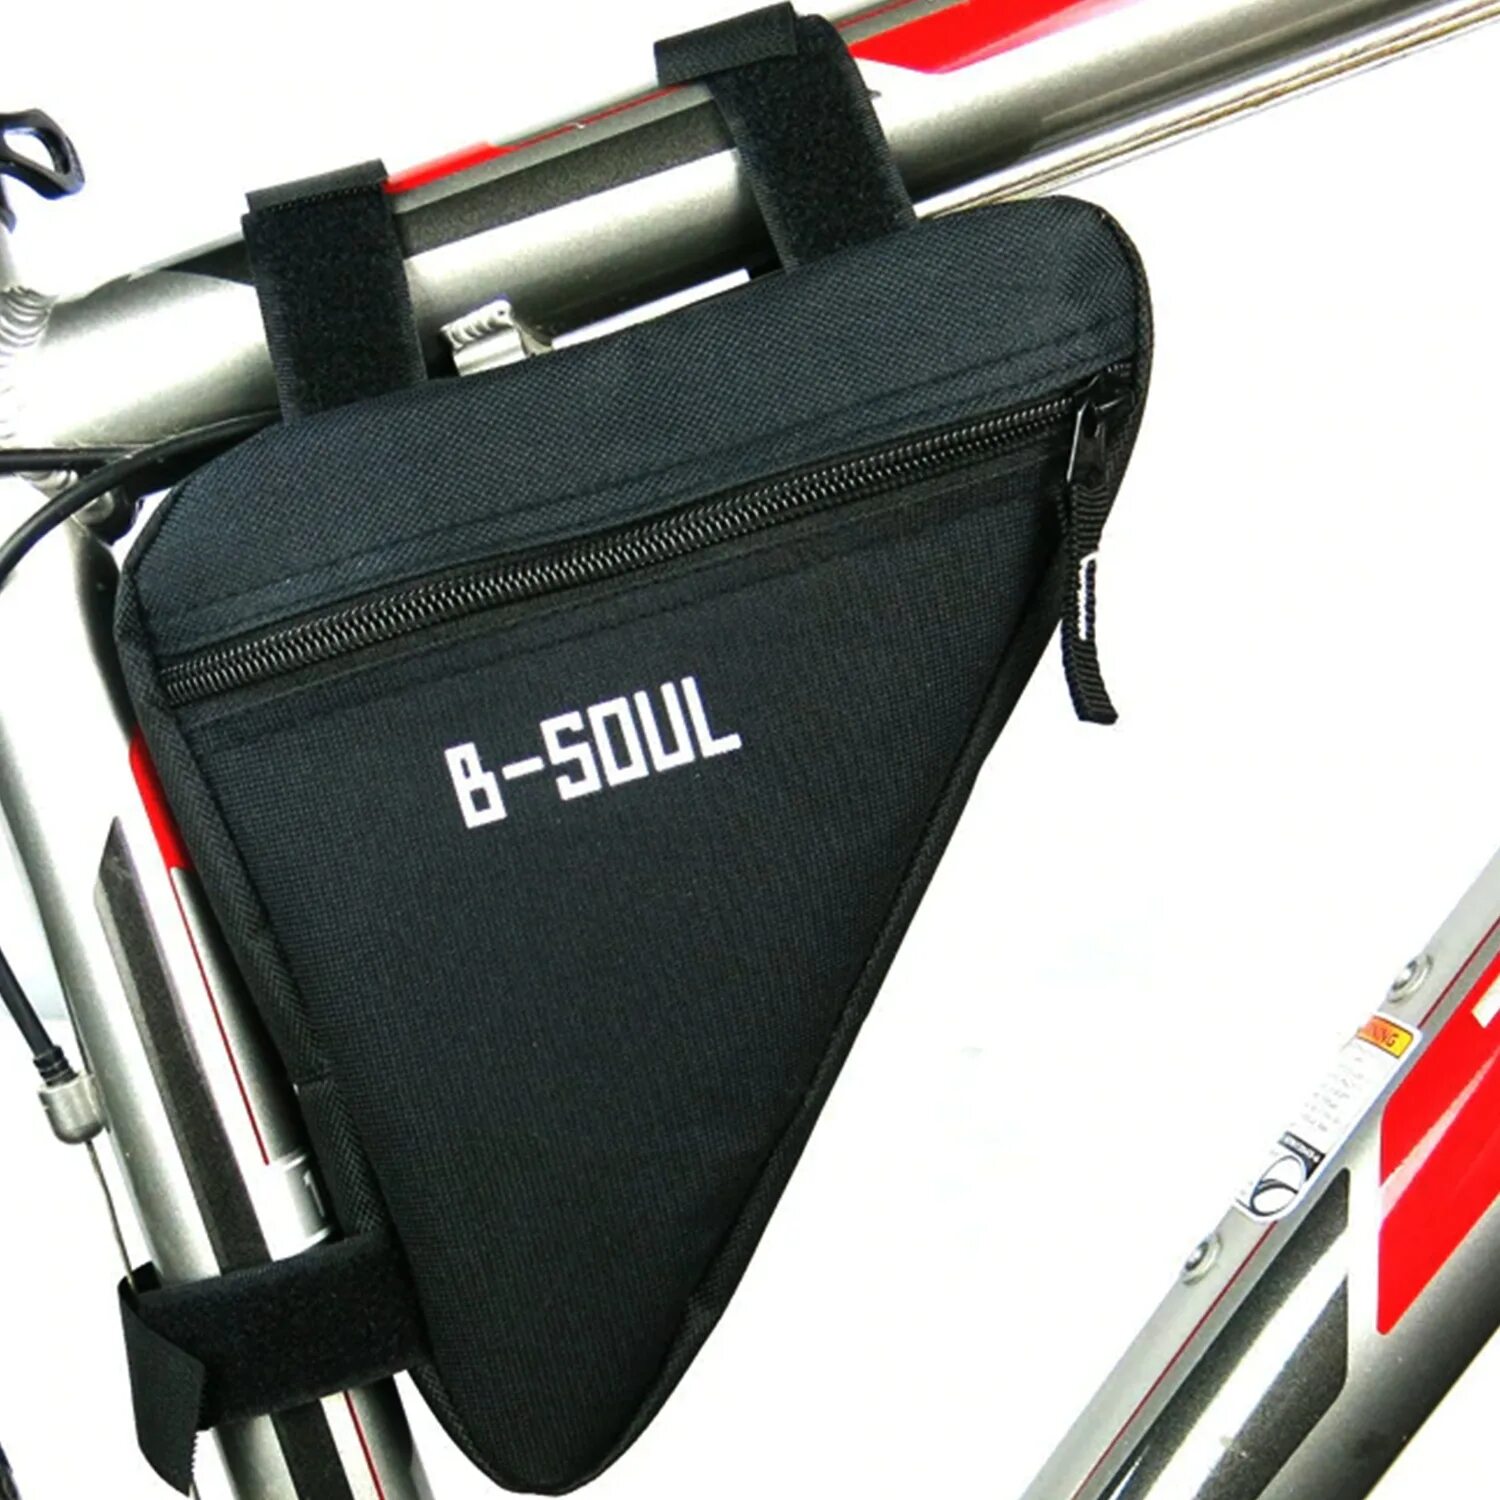 B-Soul велосумка велосипедная сумка на раму. Велосумка стелс на раму. B-Soul велосумка на багажник. Forward Sporting сумка под раму. Bike bag